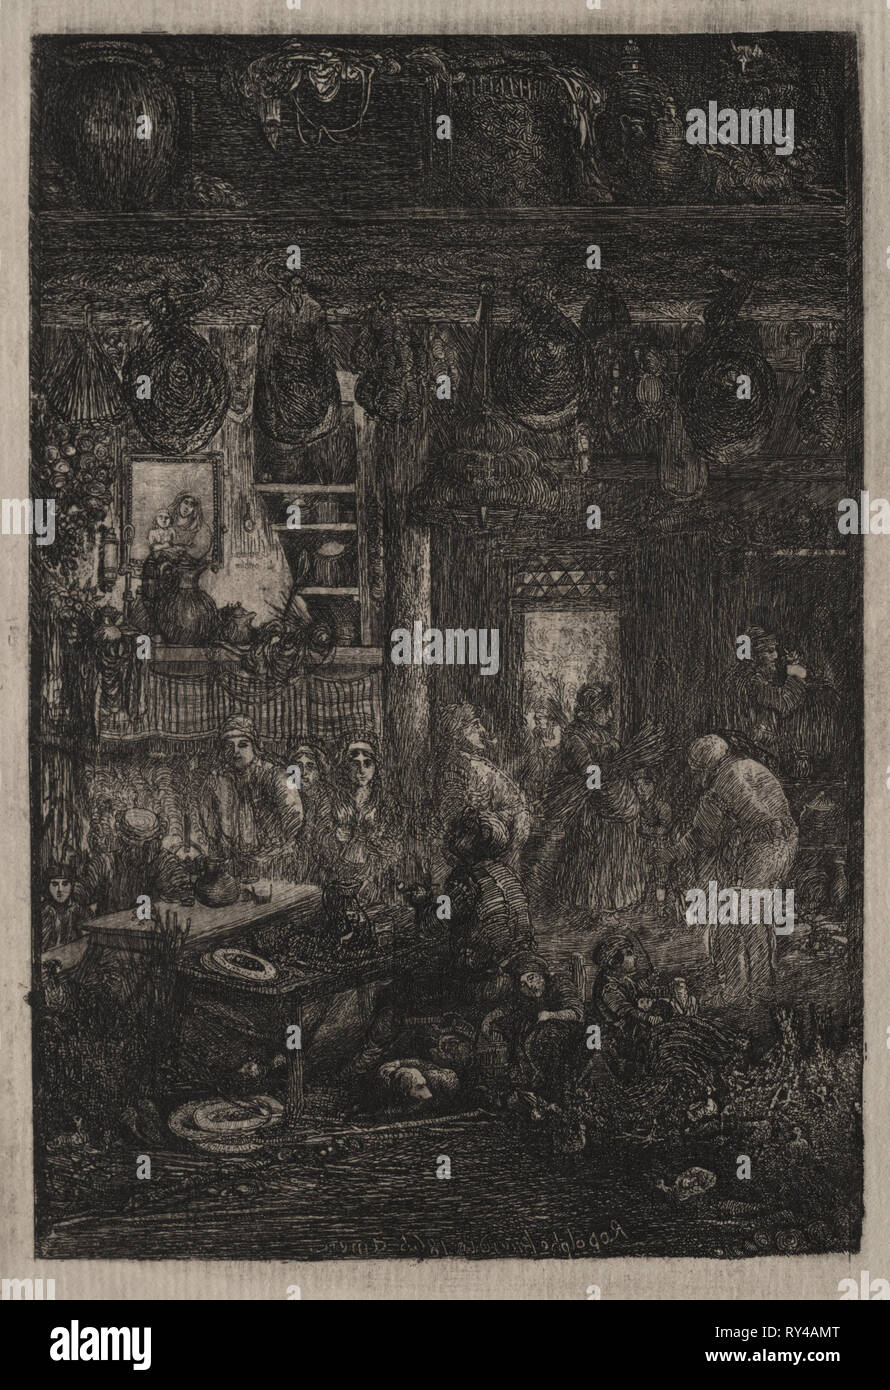 De l'intérieur moldave, 1865. Rodolphe Bresdin (Français, 1822-1885). Fiche technique : eau-forte, 29,4 x 22,5 cm (11 9/16 x 8 7/8 in.) ; 19,9 x 12,3 : platemark cm (7 13/16 x 4 13/16 in Banque D'Images